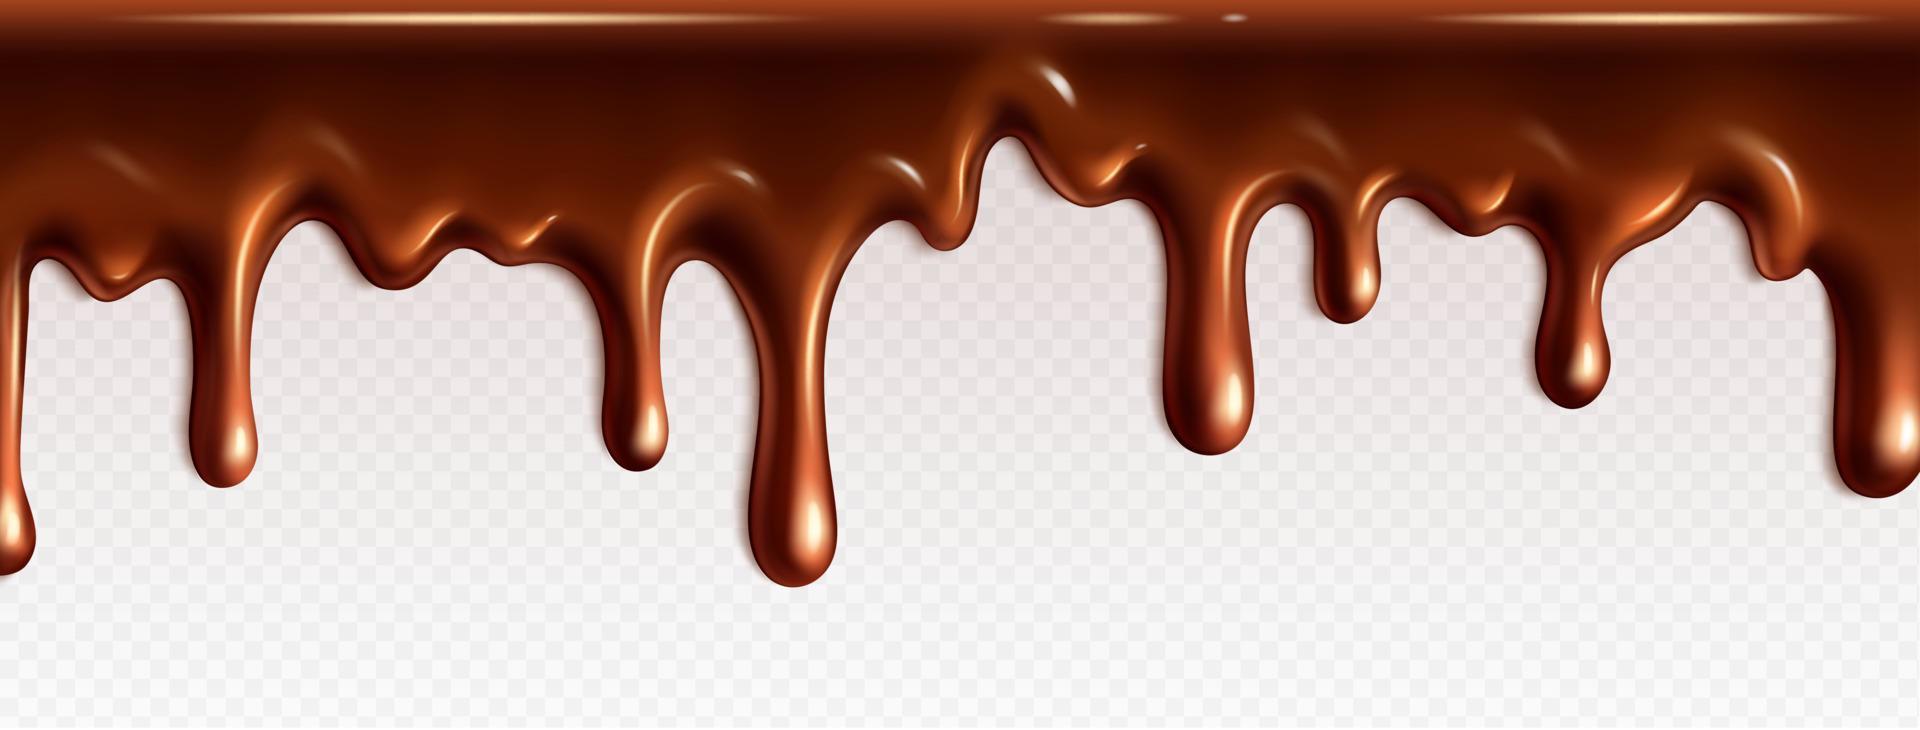 realistisch druipend chocola structuur vector grens